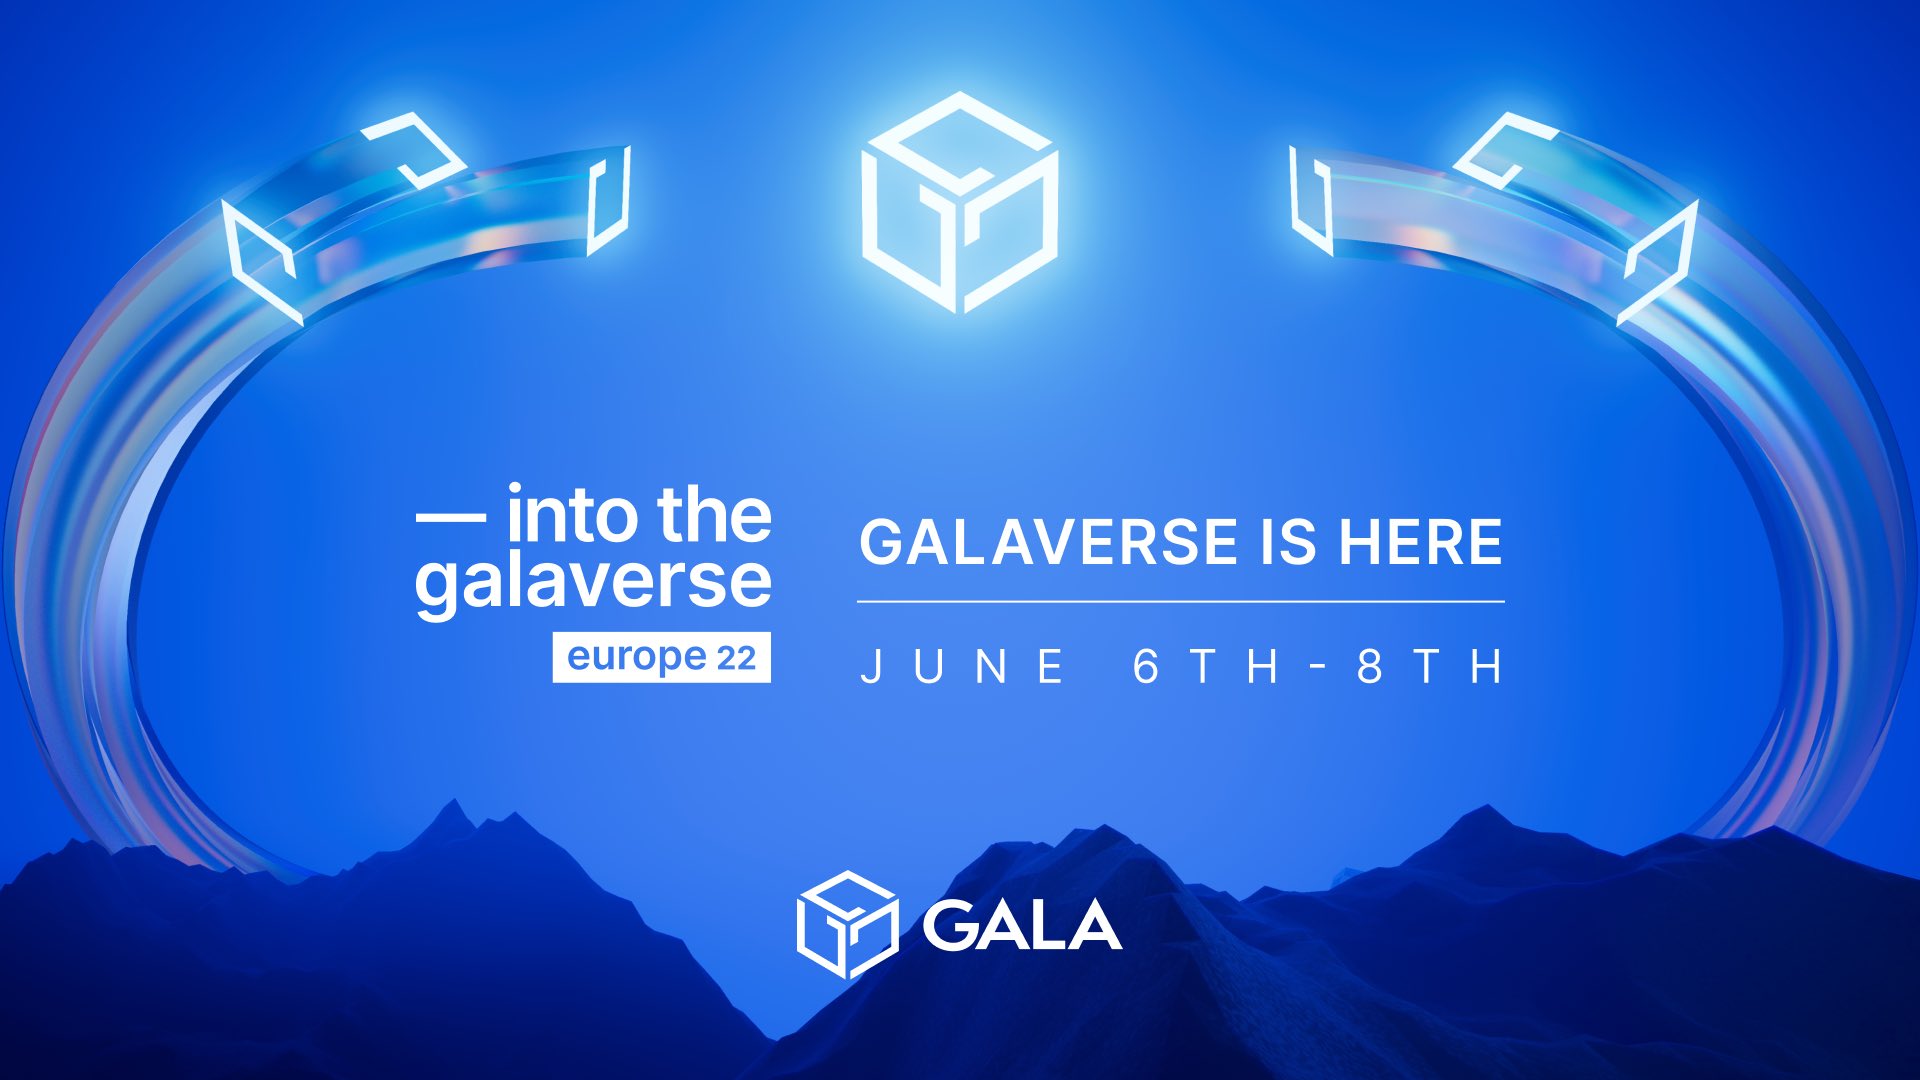 <갈라버스 유럽 2022>는 6월 6일~8일에 몰타에서 열렸다